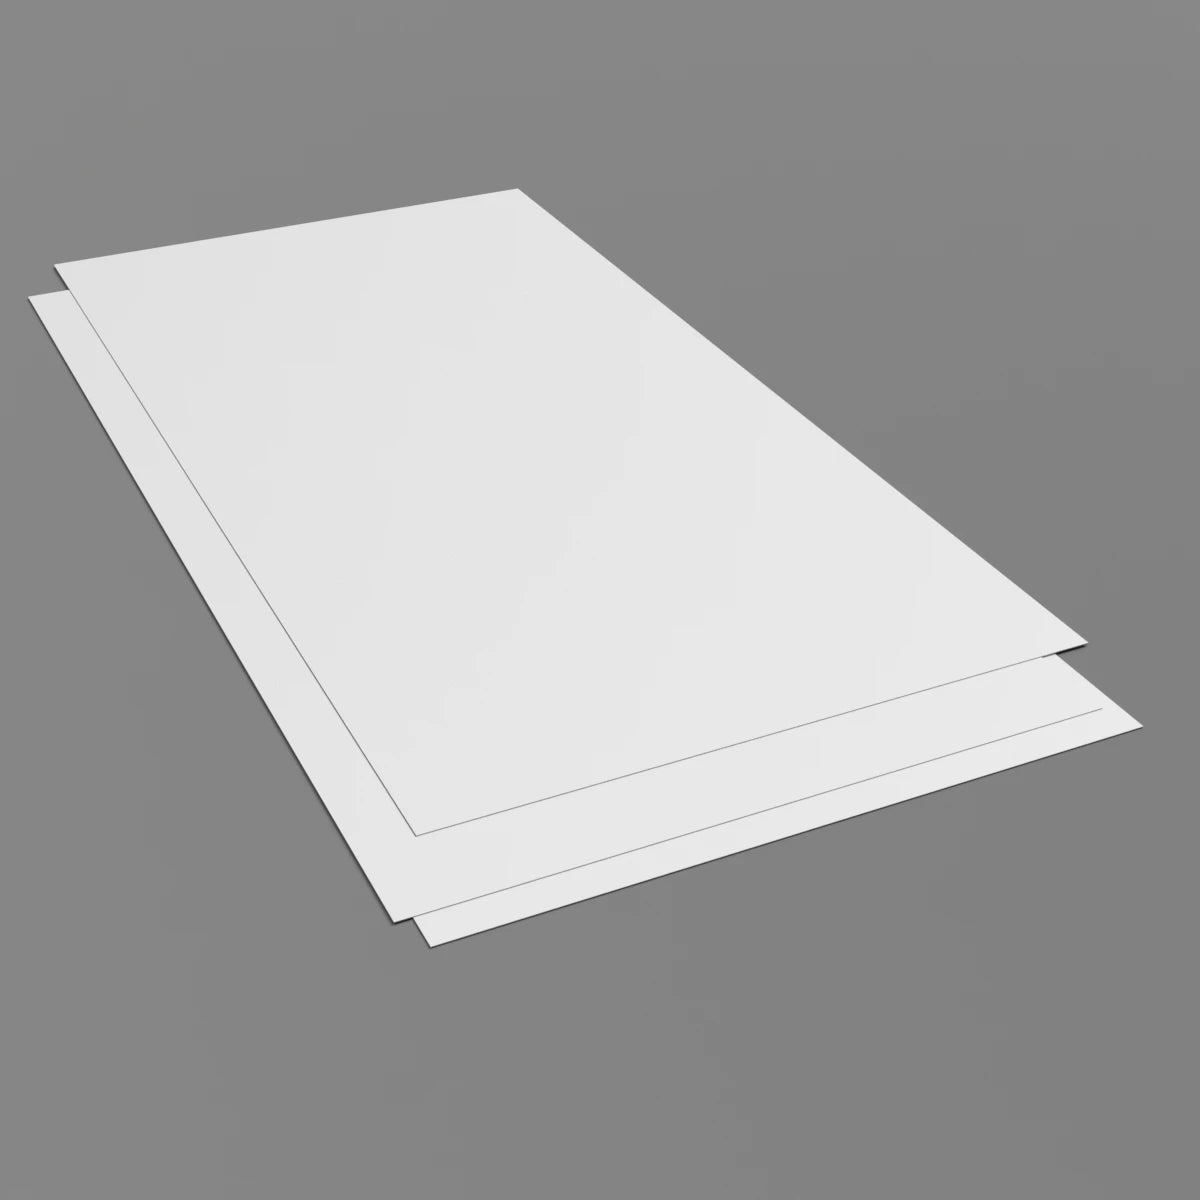 2mm White Hygienic Wall Cladding Sheet